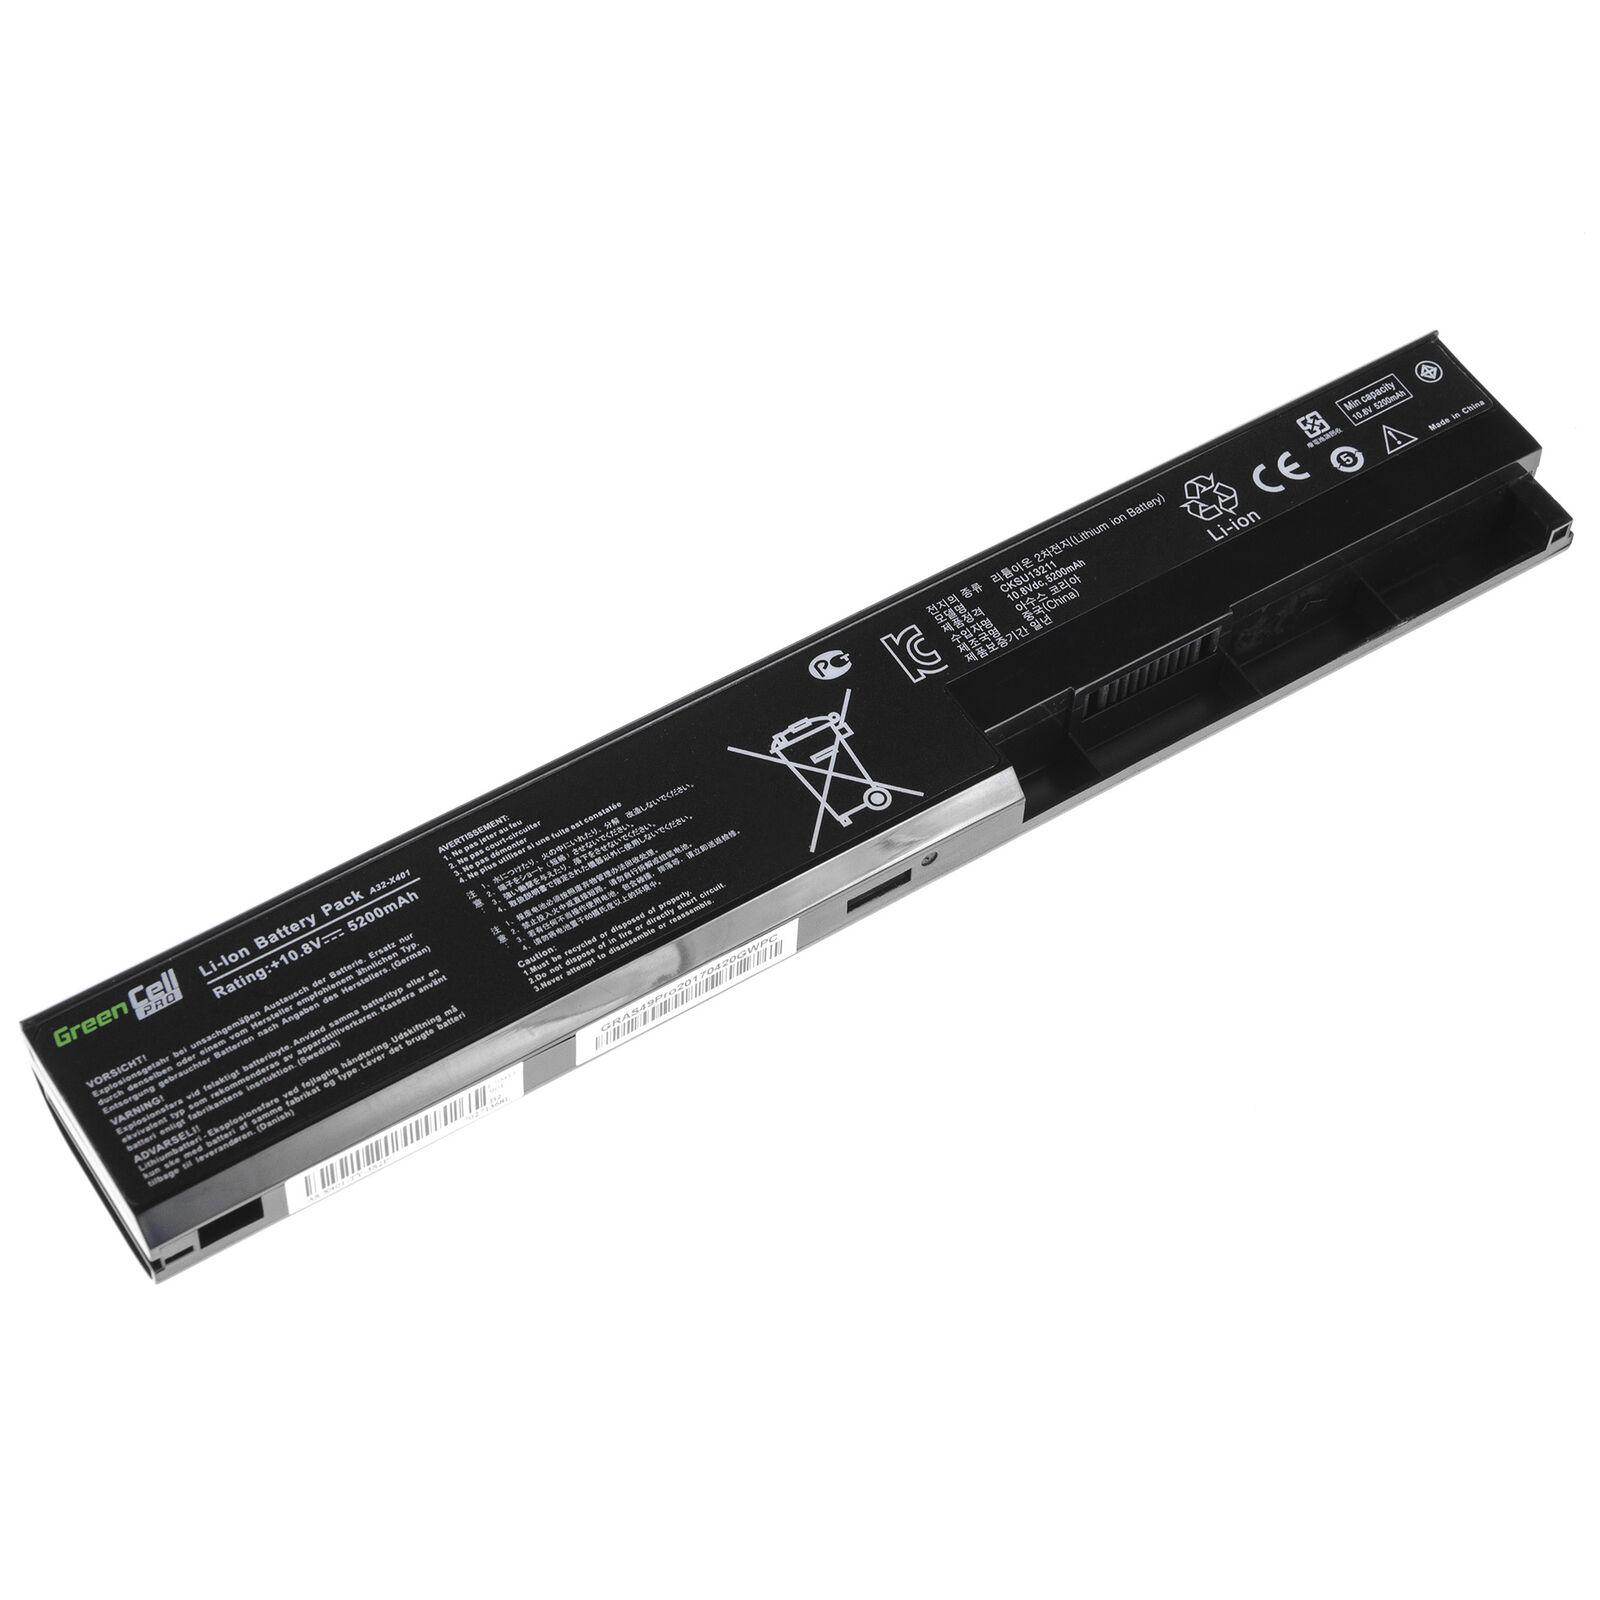 Asus X301 X301A X301U X501 X501A X501U A31-X401 A41-X401 compatible battery